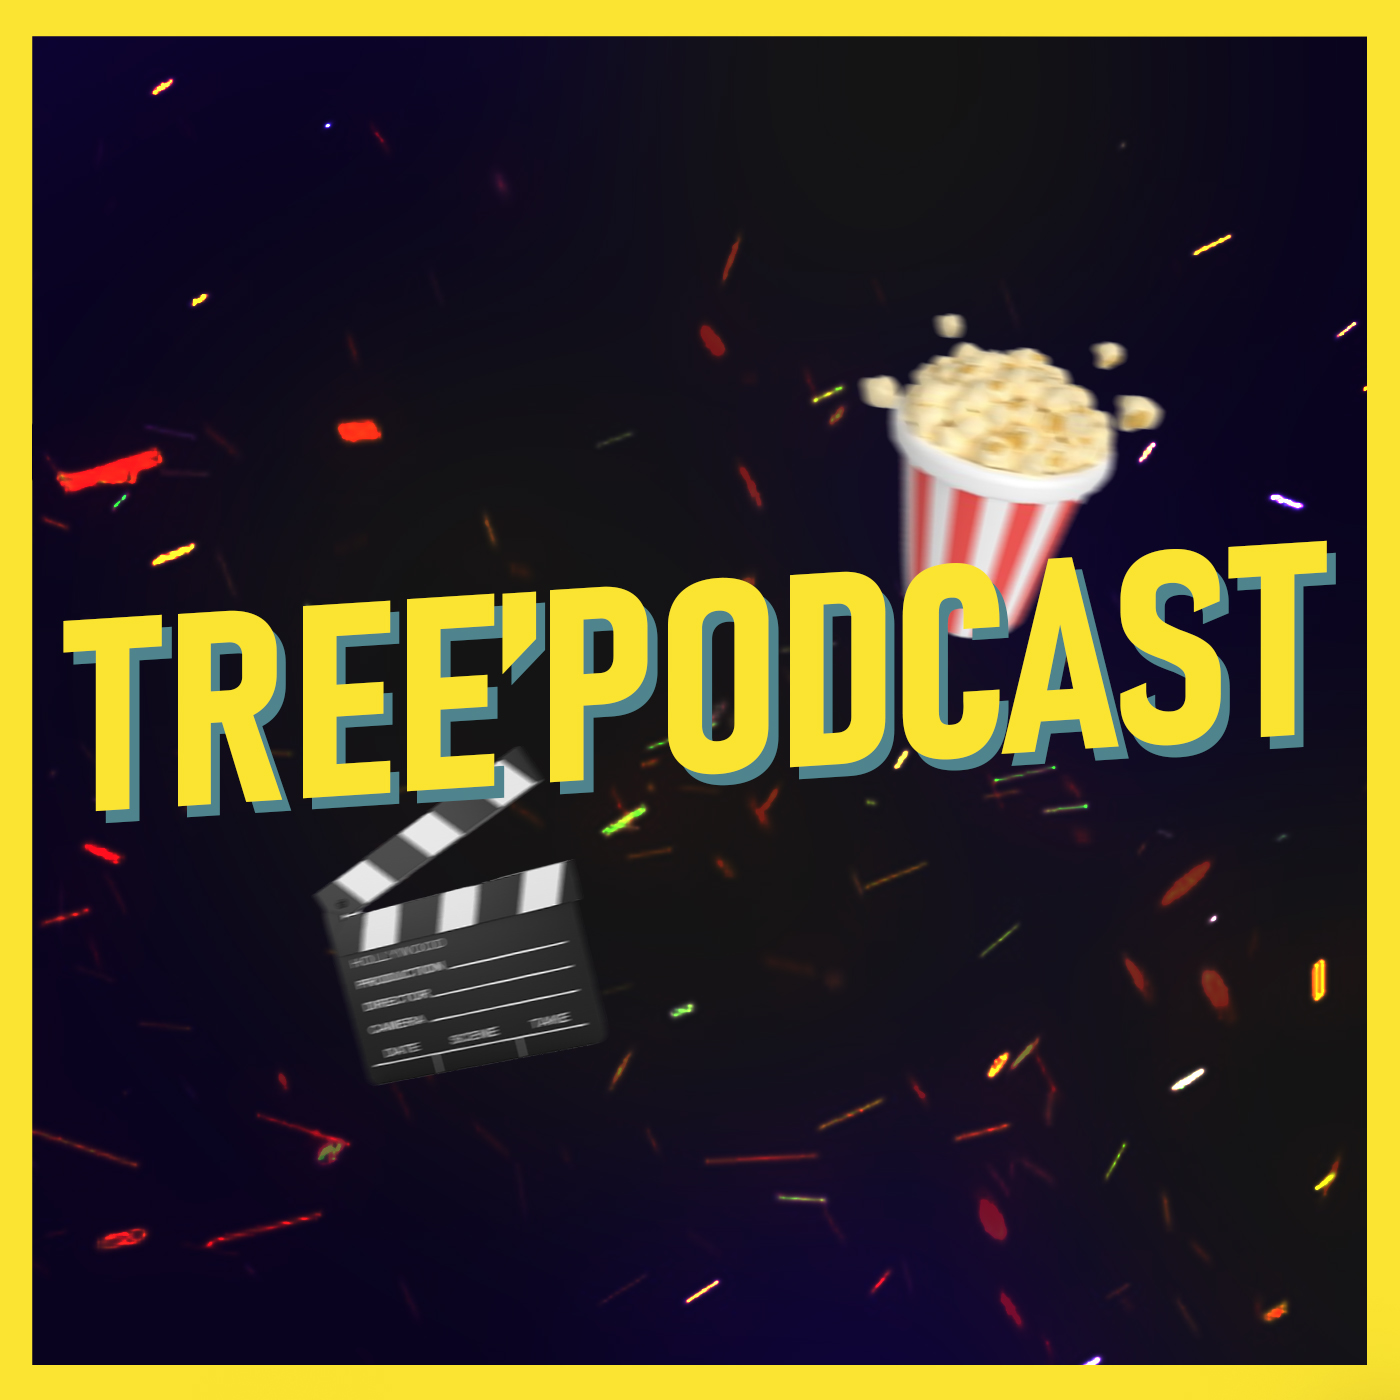 Le Tree’podcast, nouvelle production Treepix